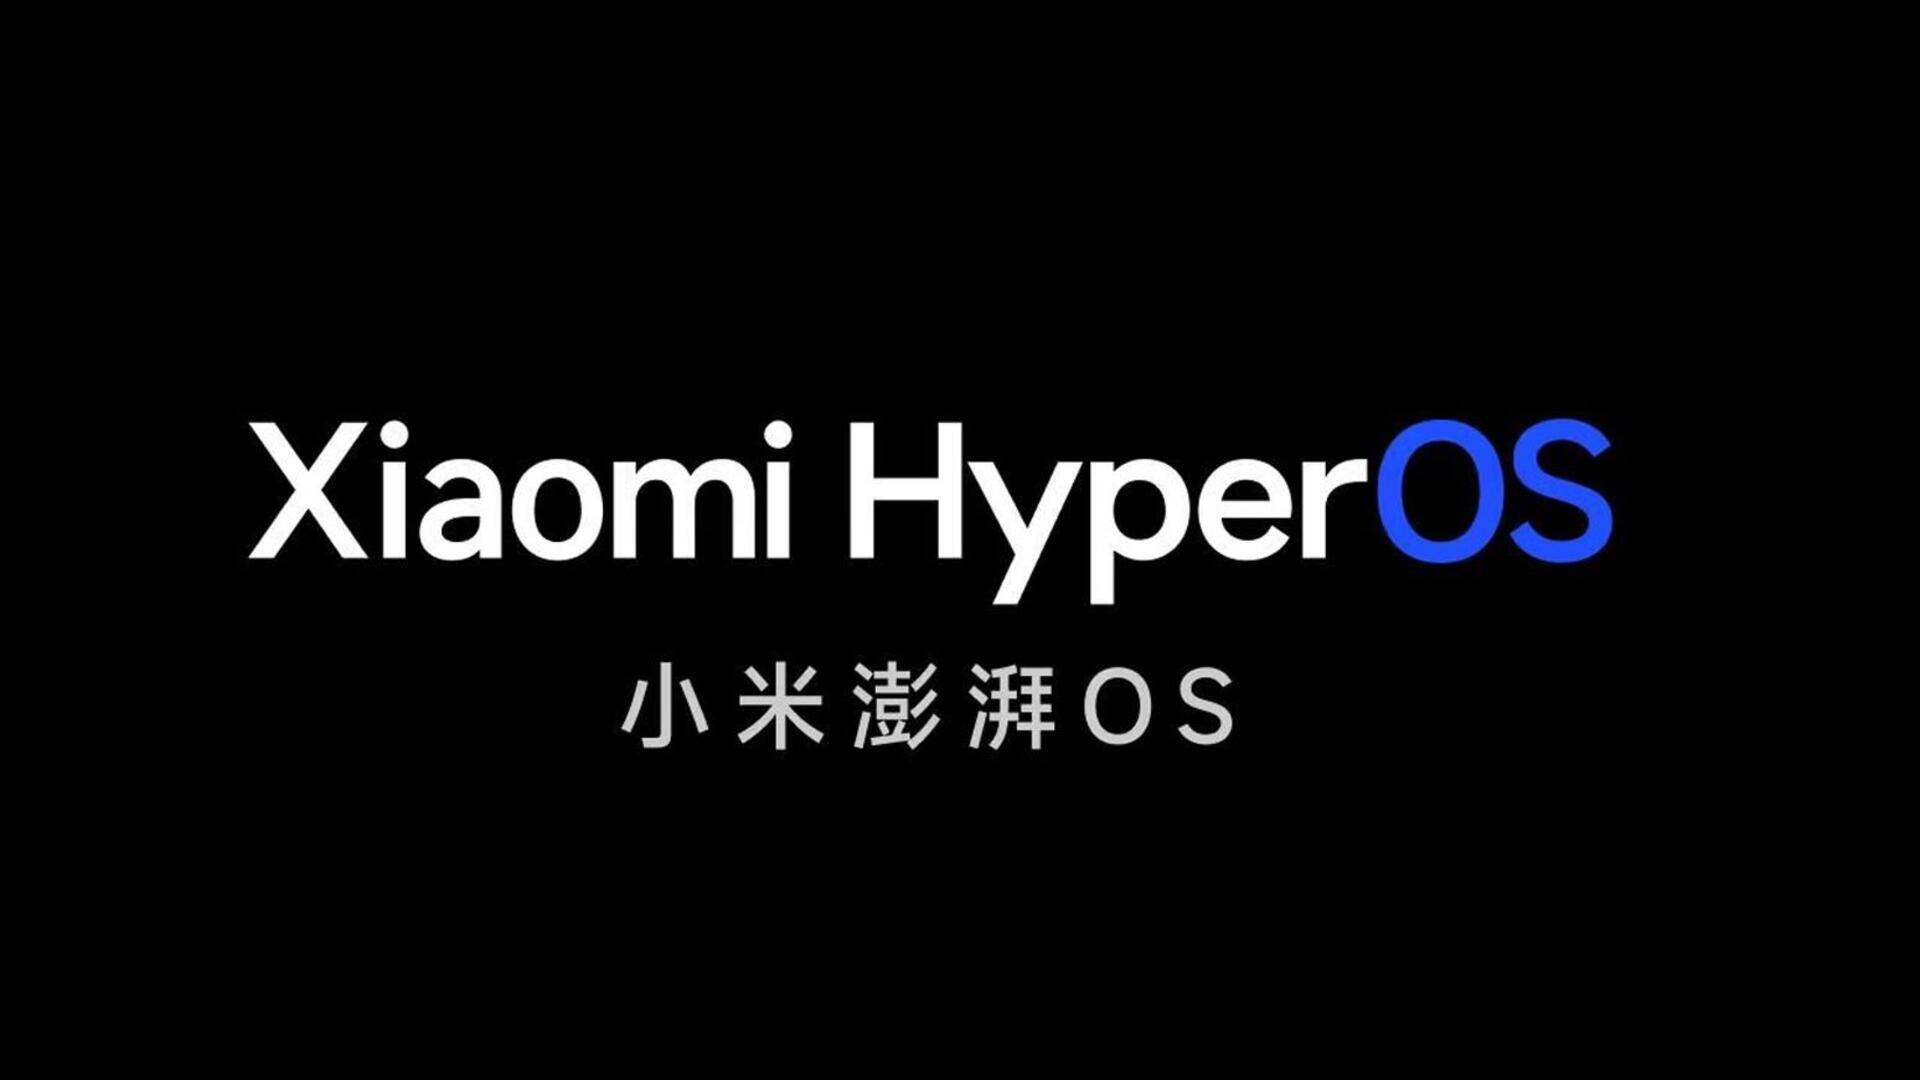 शाओमी 14 सीरीज पर डेब्यू करेगा हाइपरOS, MIUI OS की लेगा जगह